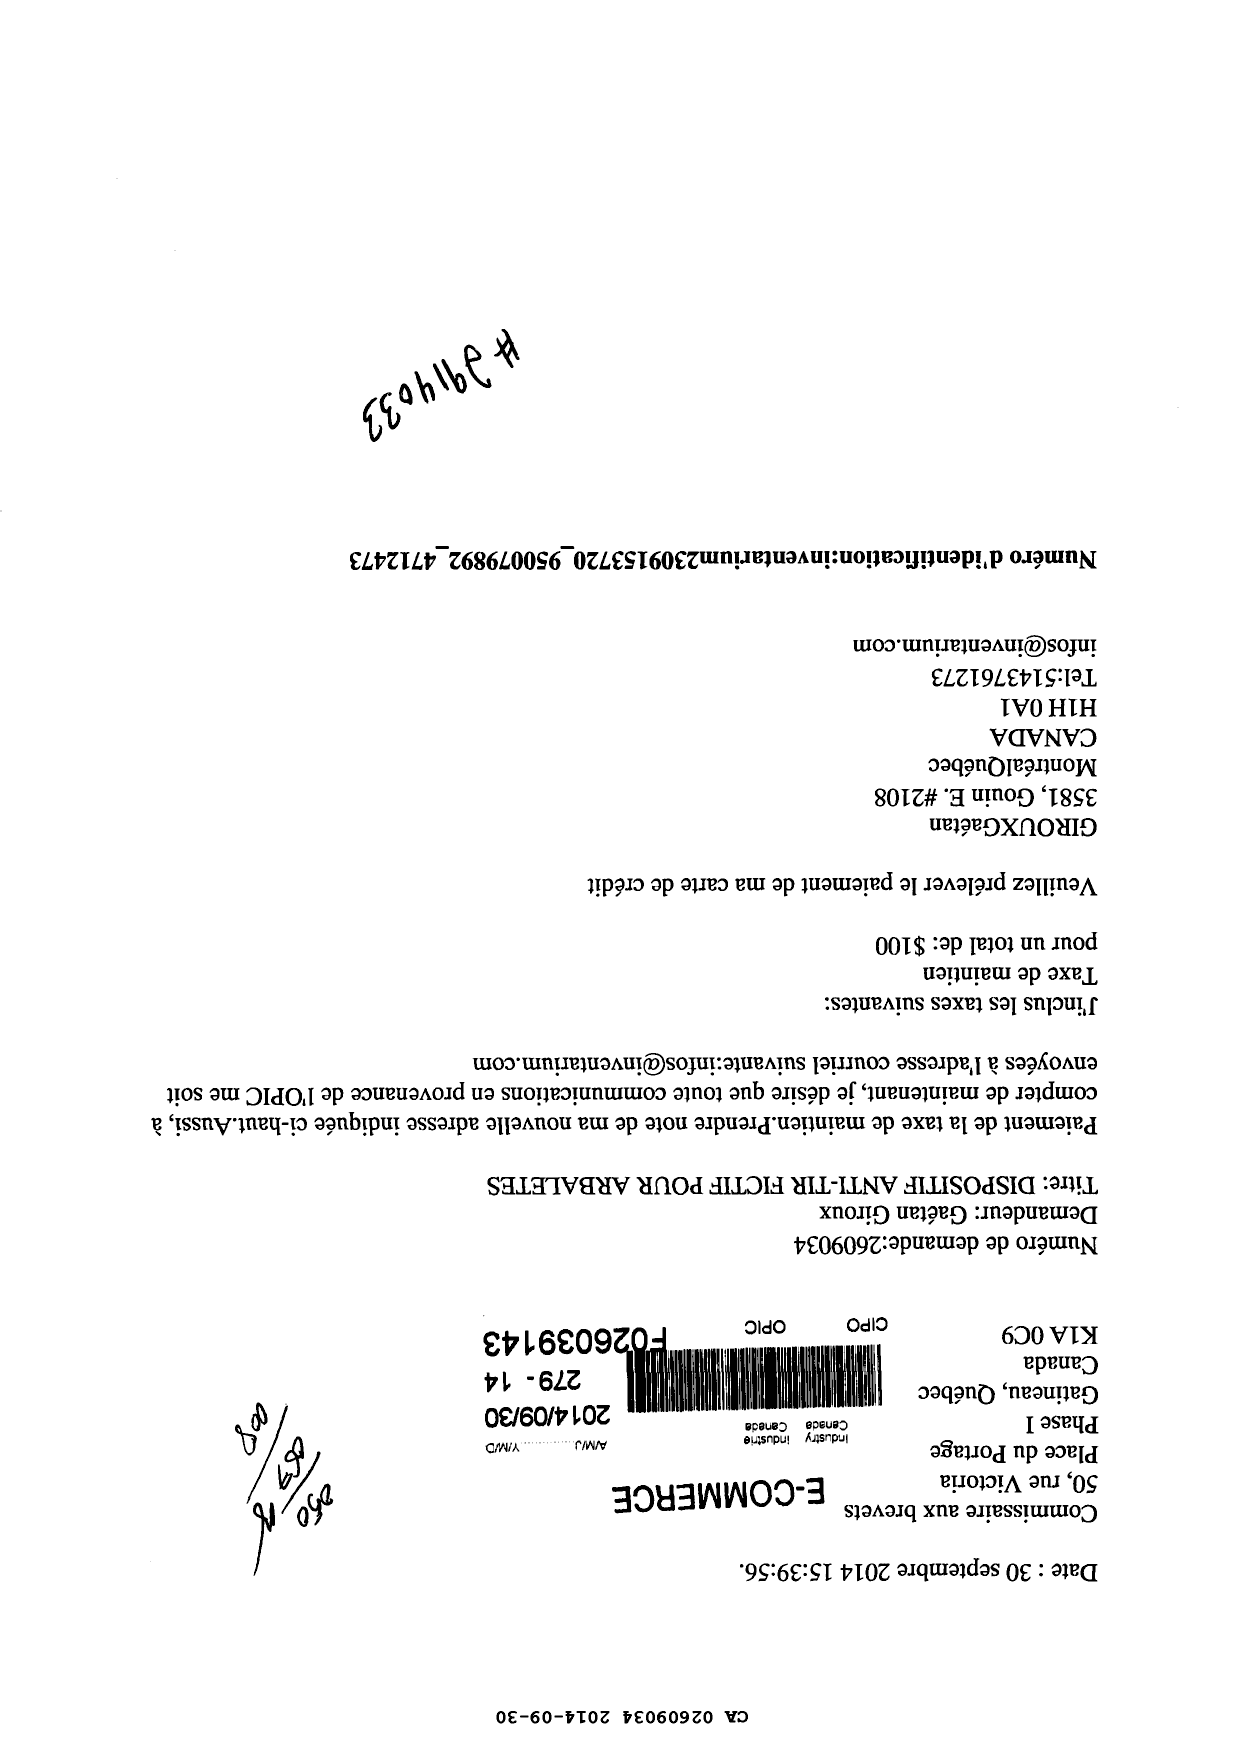 Document de brevet canadien 2609034. Correspondance 20131230. Image 1 de 1